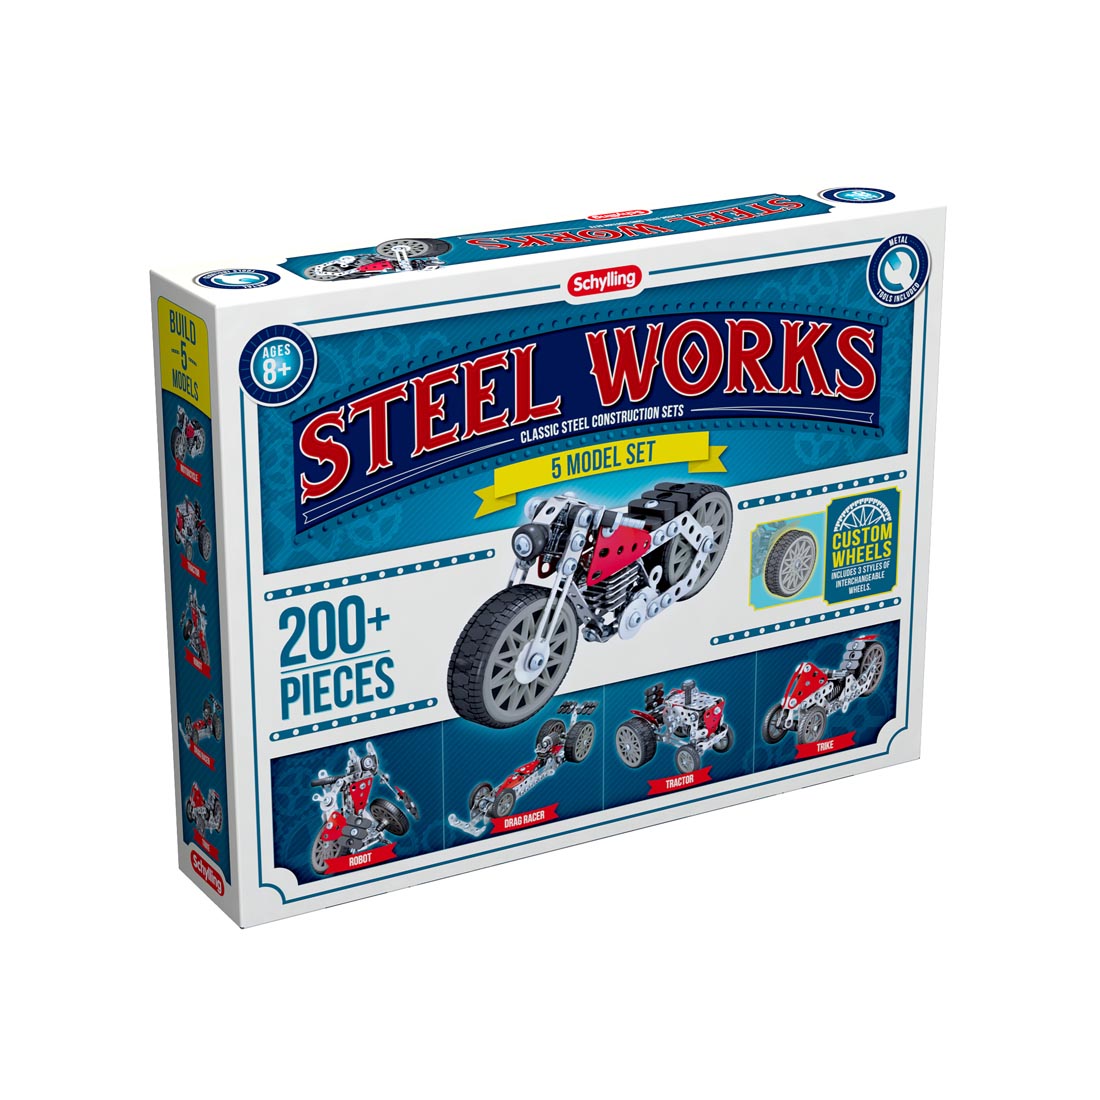 Steel Works 5 Model Construction Set